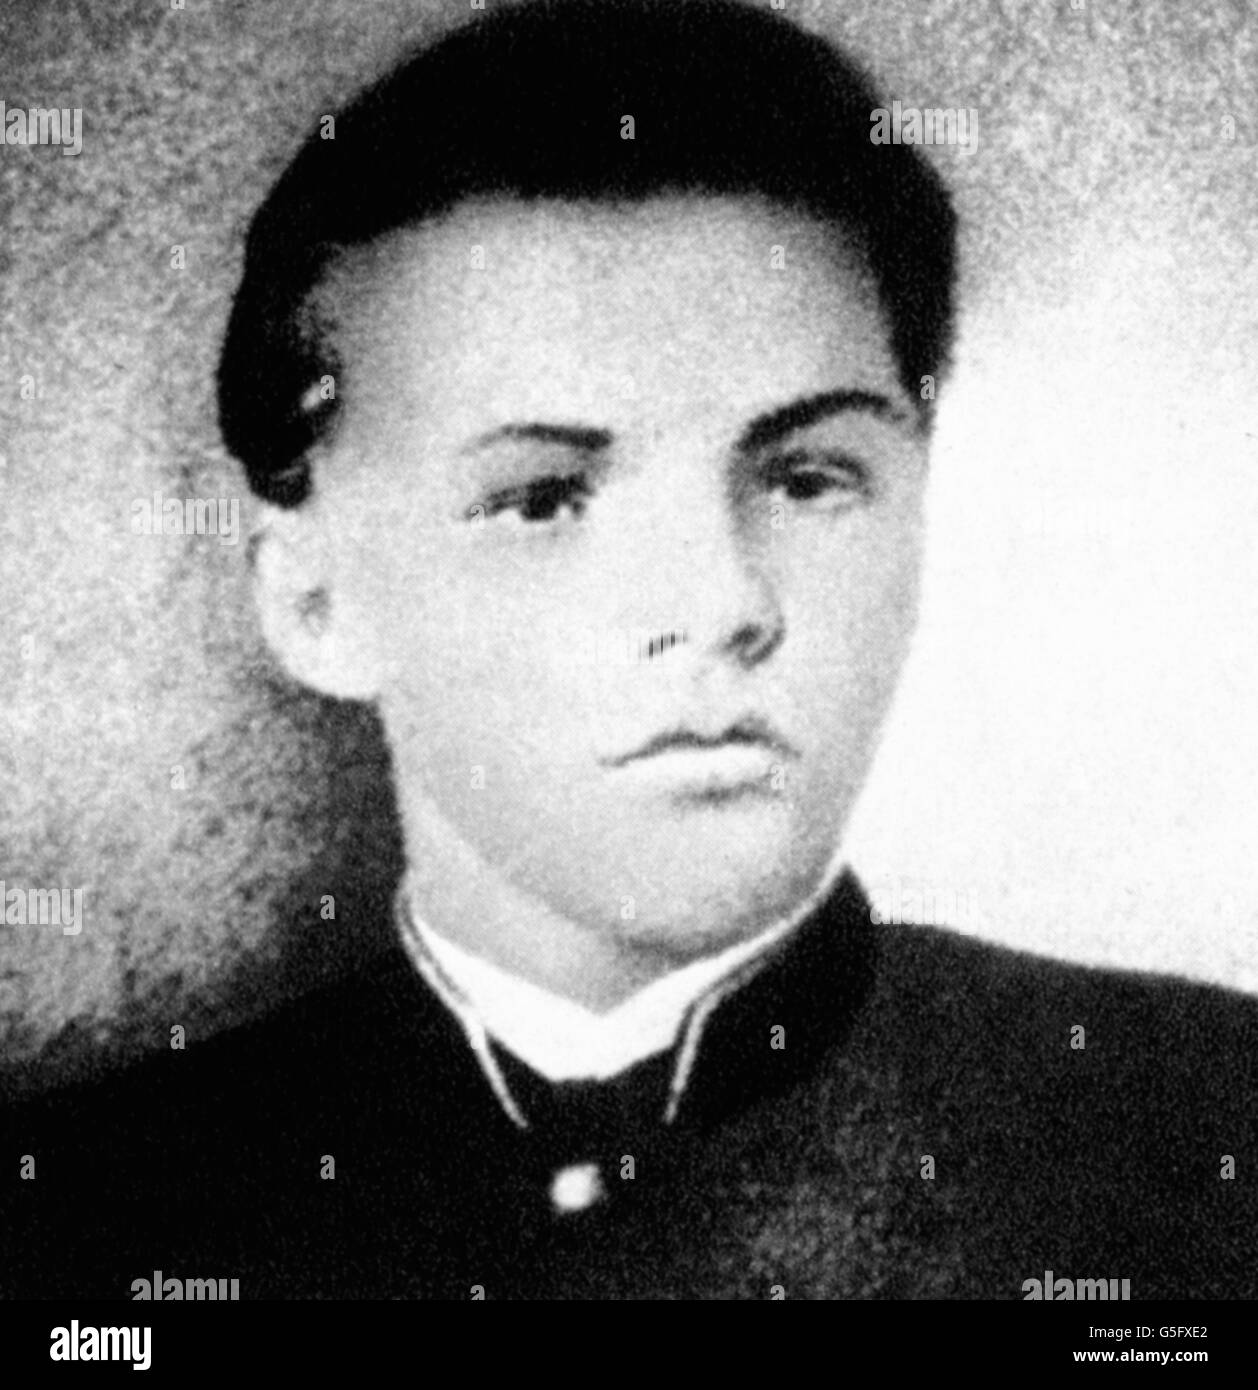 Lenin (Vladimir Ilyich Ulyanov), 22.4.1870 - 21.1.1924, politico russo, ritratto, allievo dell'Uljanovsk, scuola di grammatica, circa 1885, Foto Stock